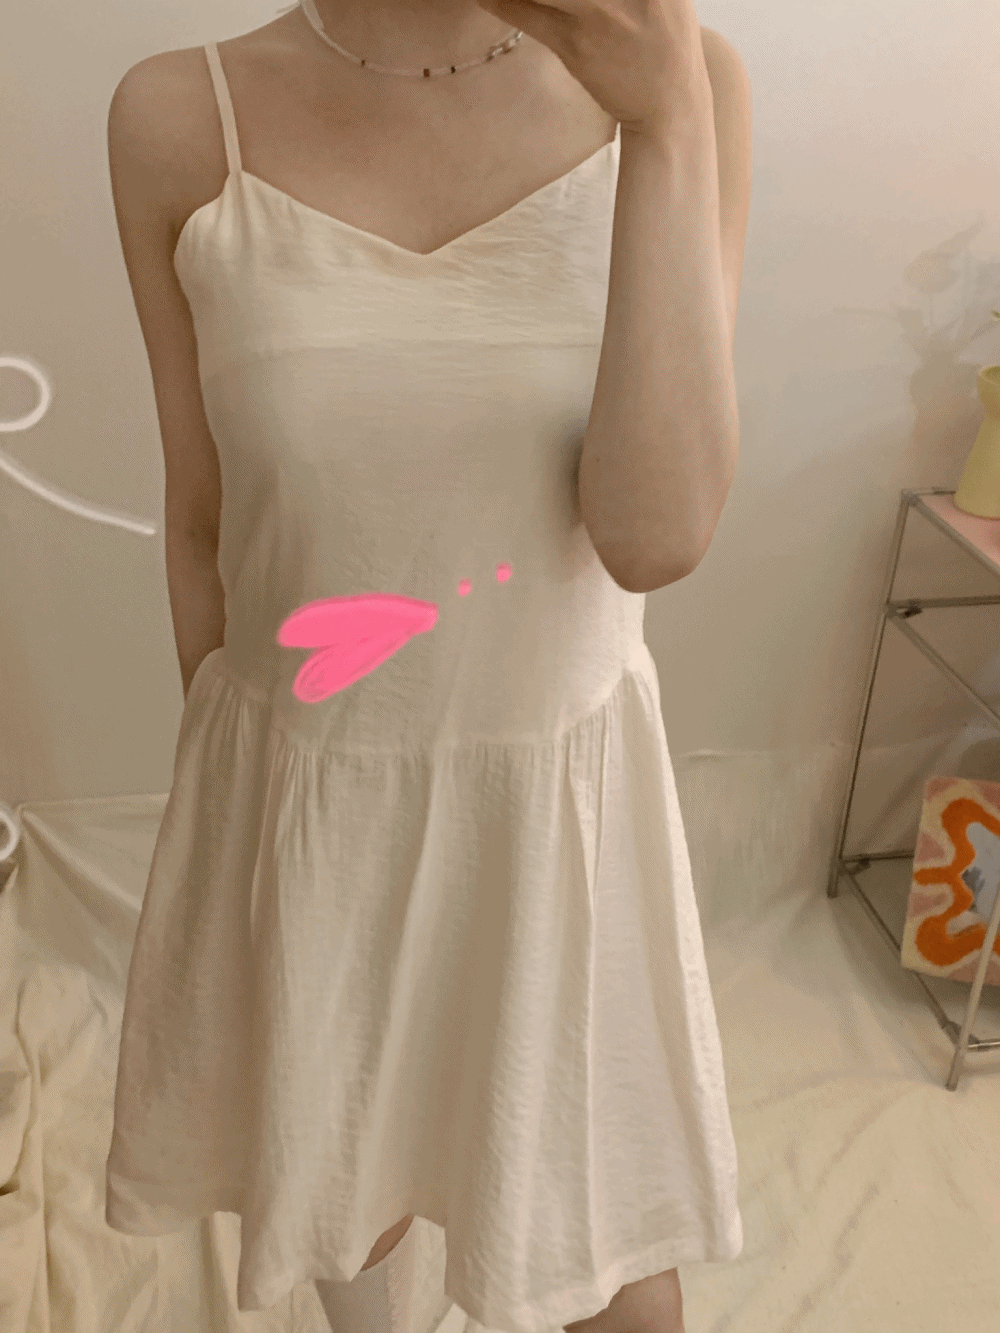 [Dress] Ballerina Pale Satin Mini Dress / 2 colors